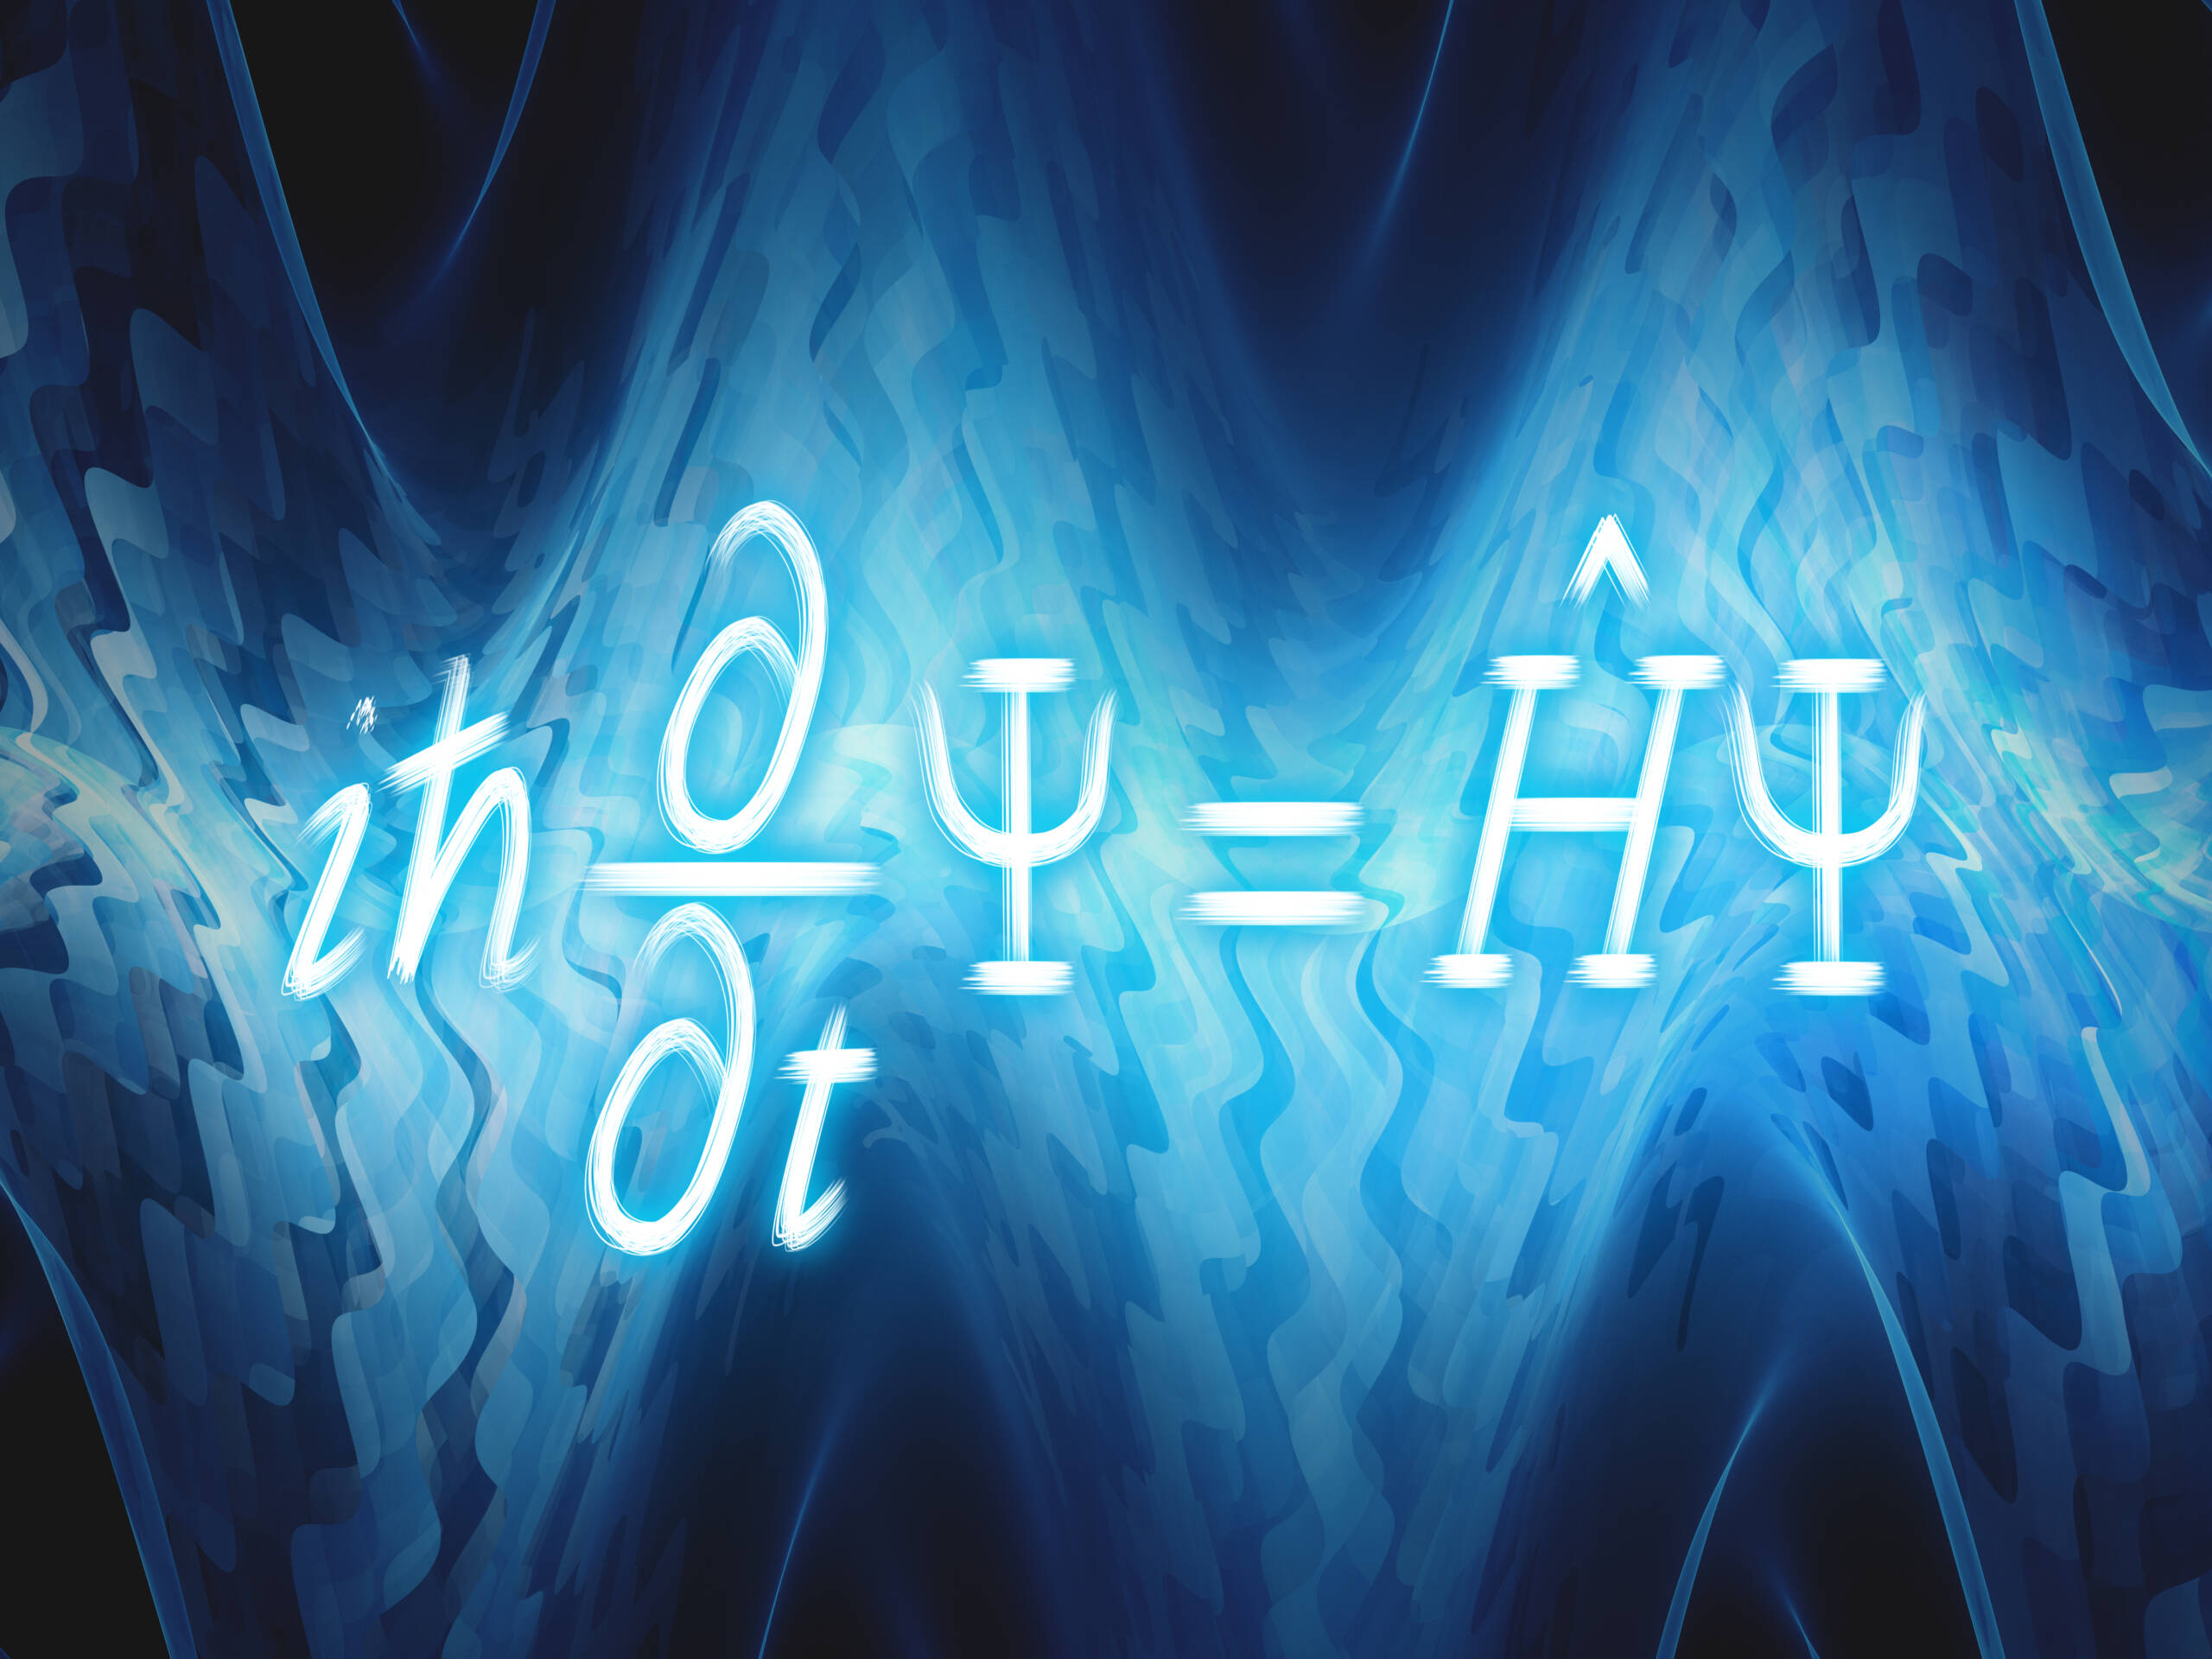 Schrödinger's Equation